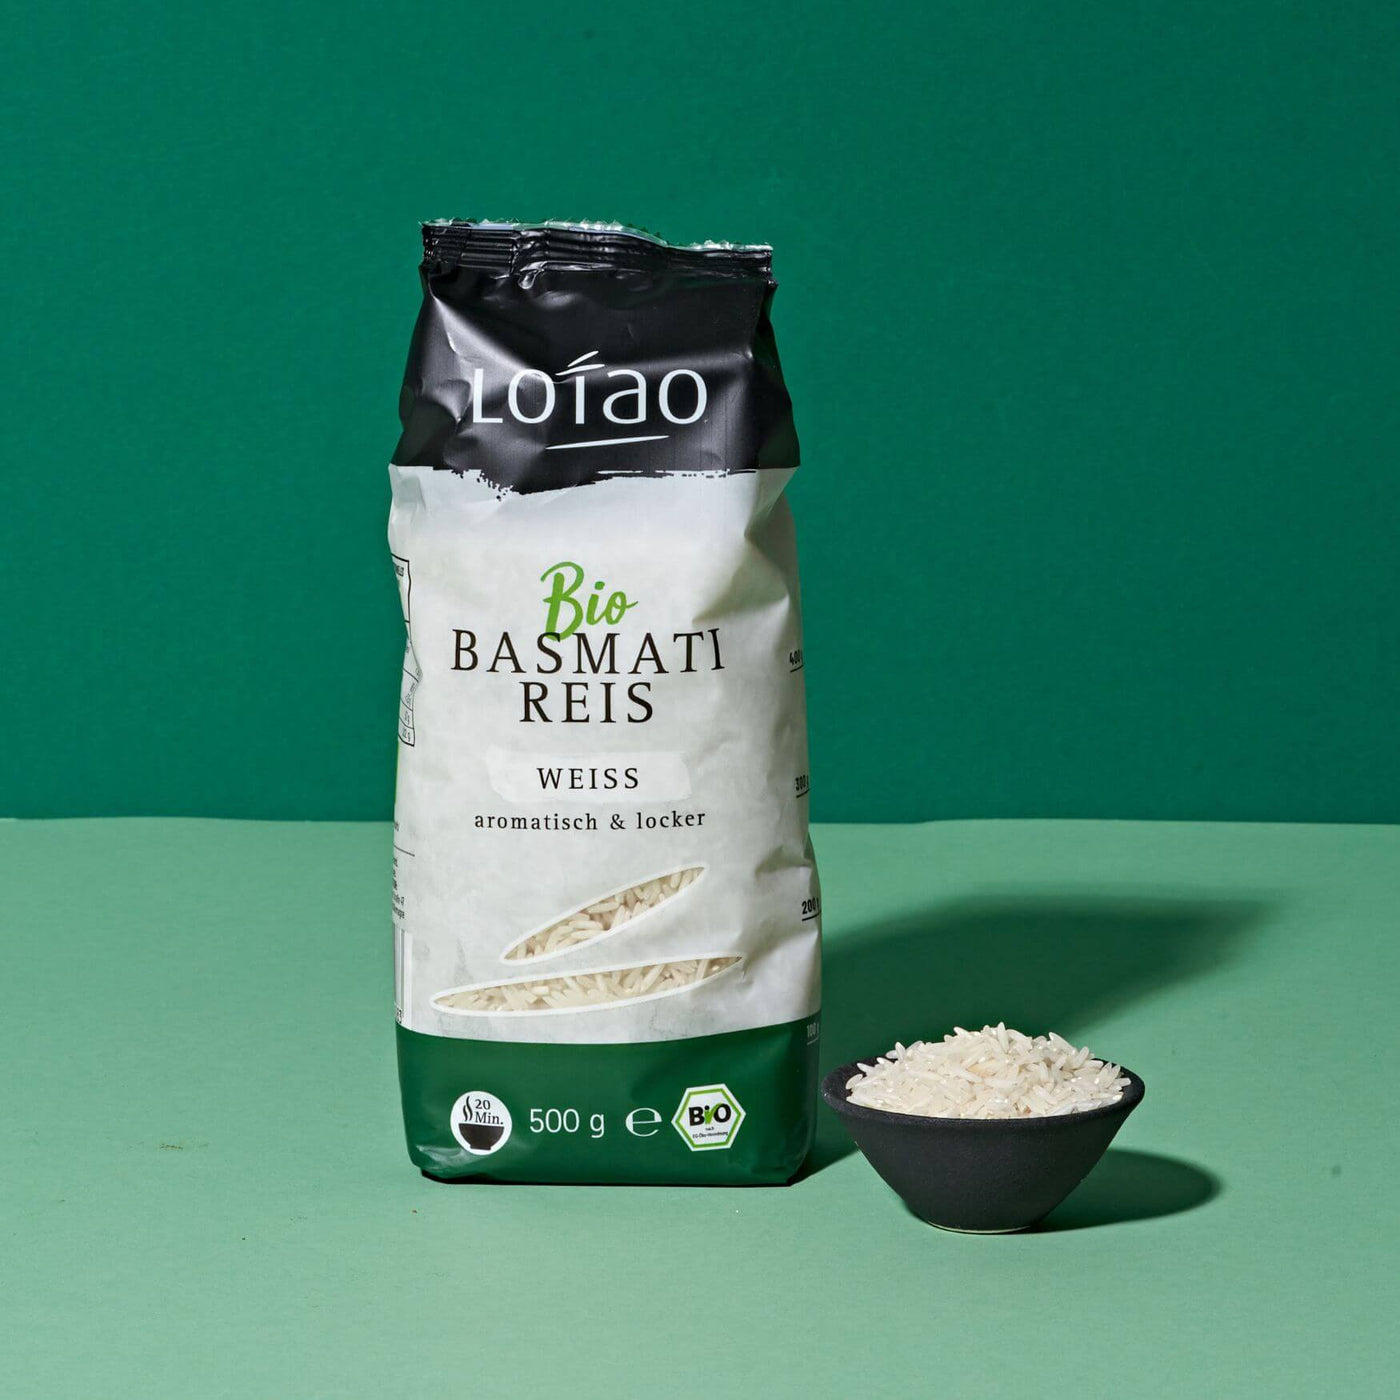 Bio Basmatireis weiß von Lotao mit Schale mit Reis davor